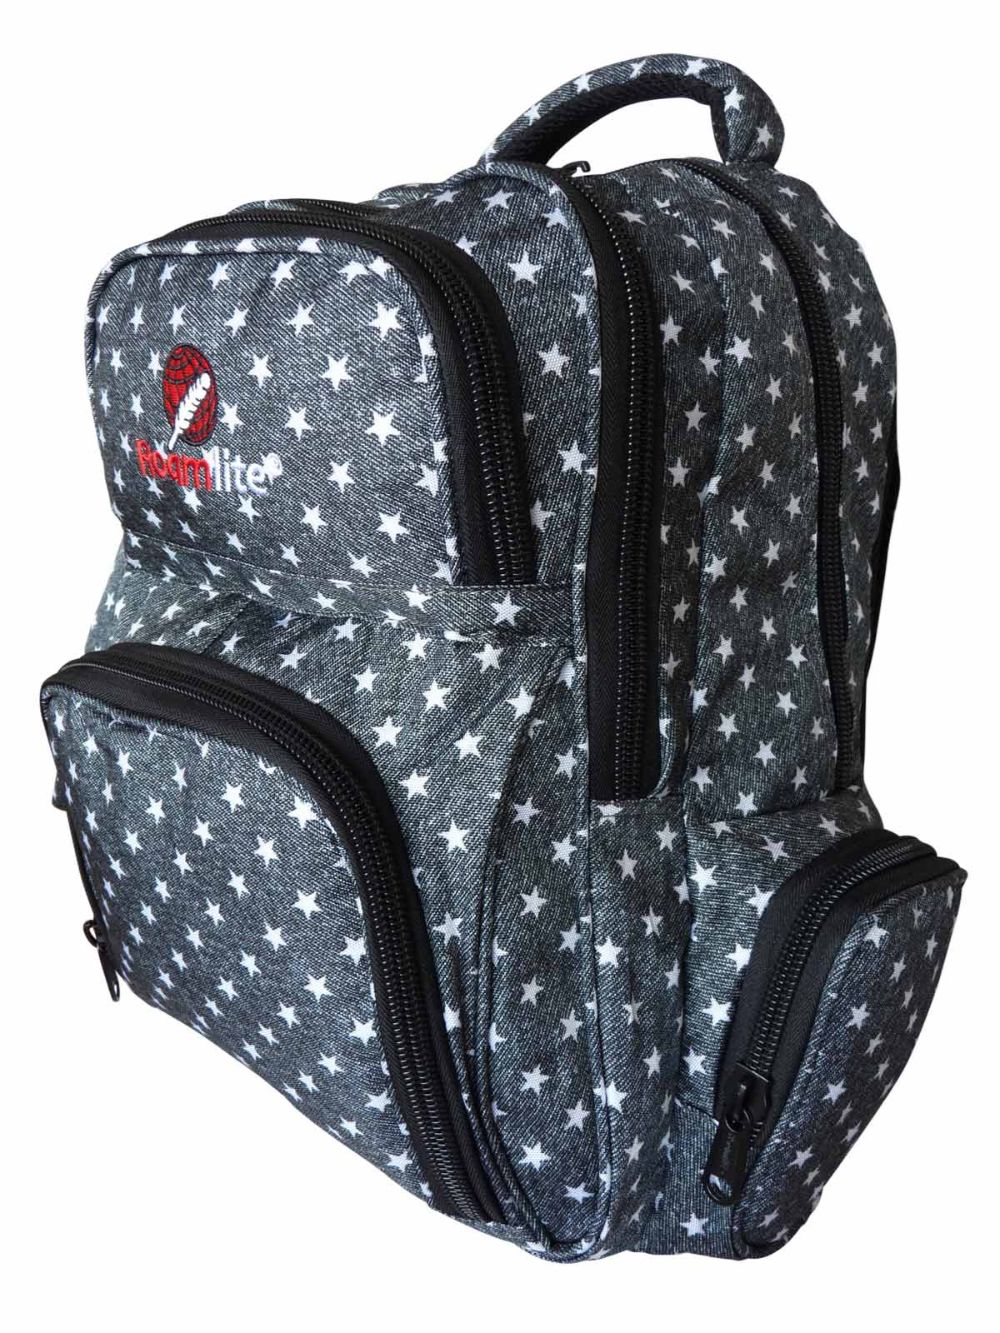 Roamlite Childrens Backpack Black Star pattern RL840 side